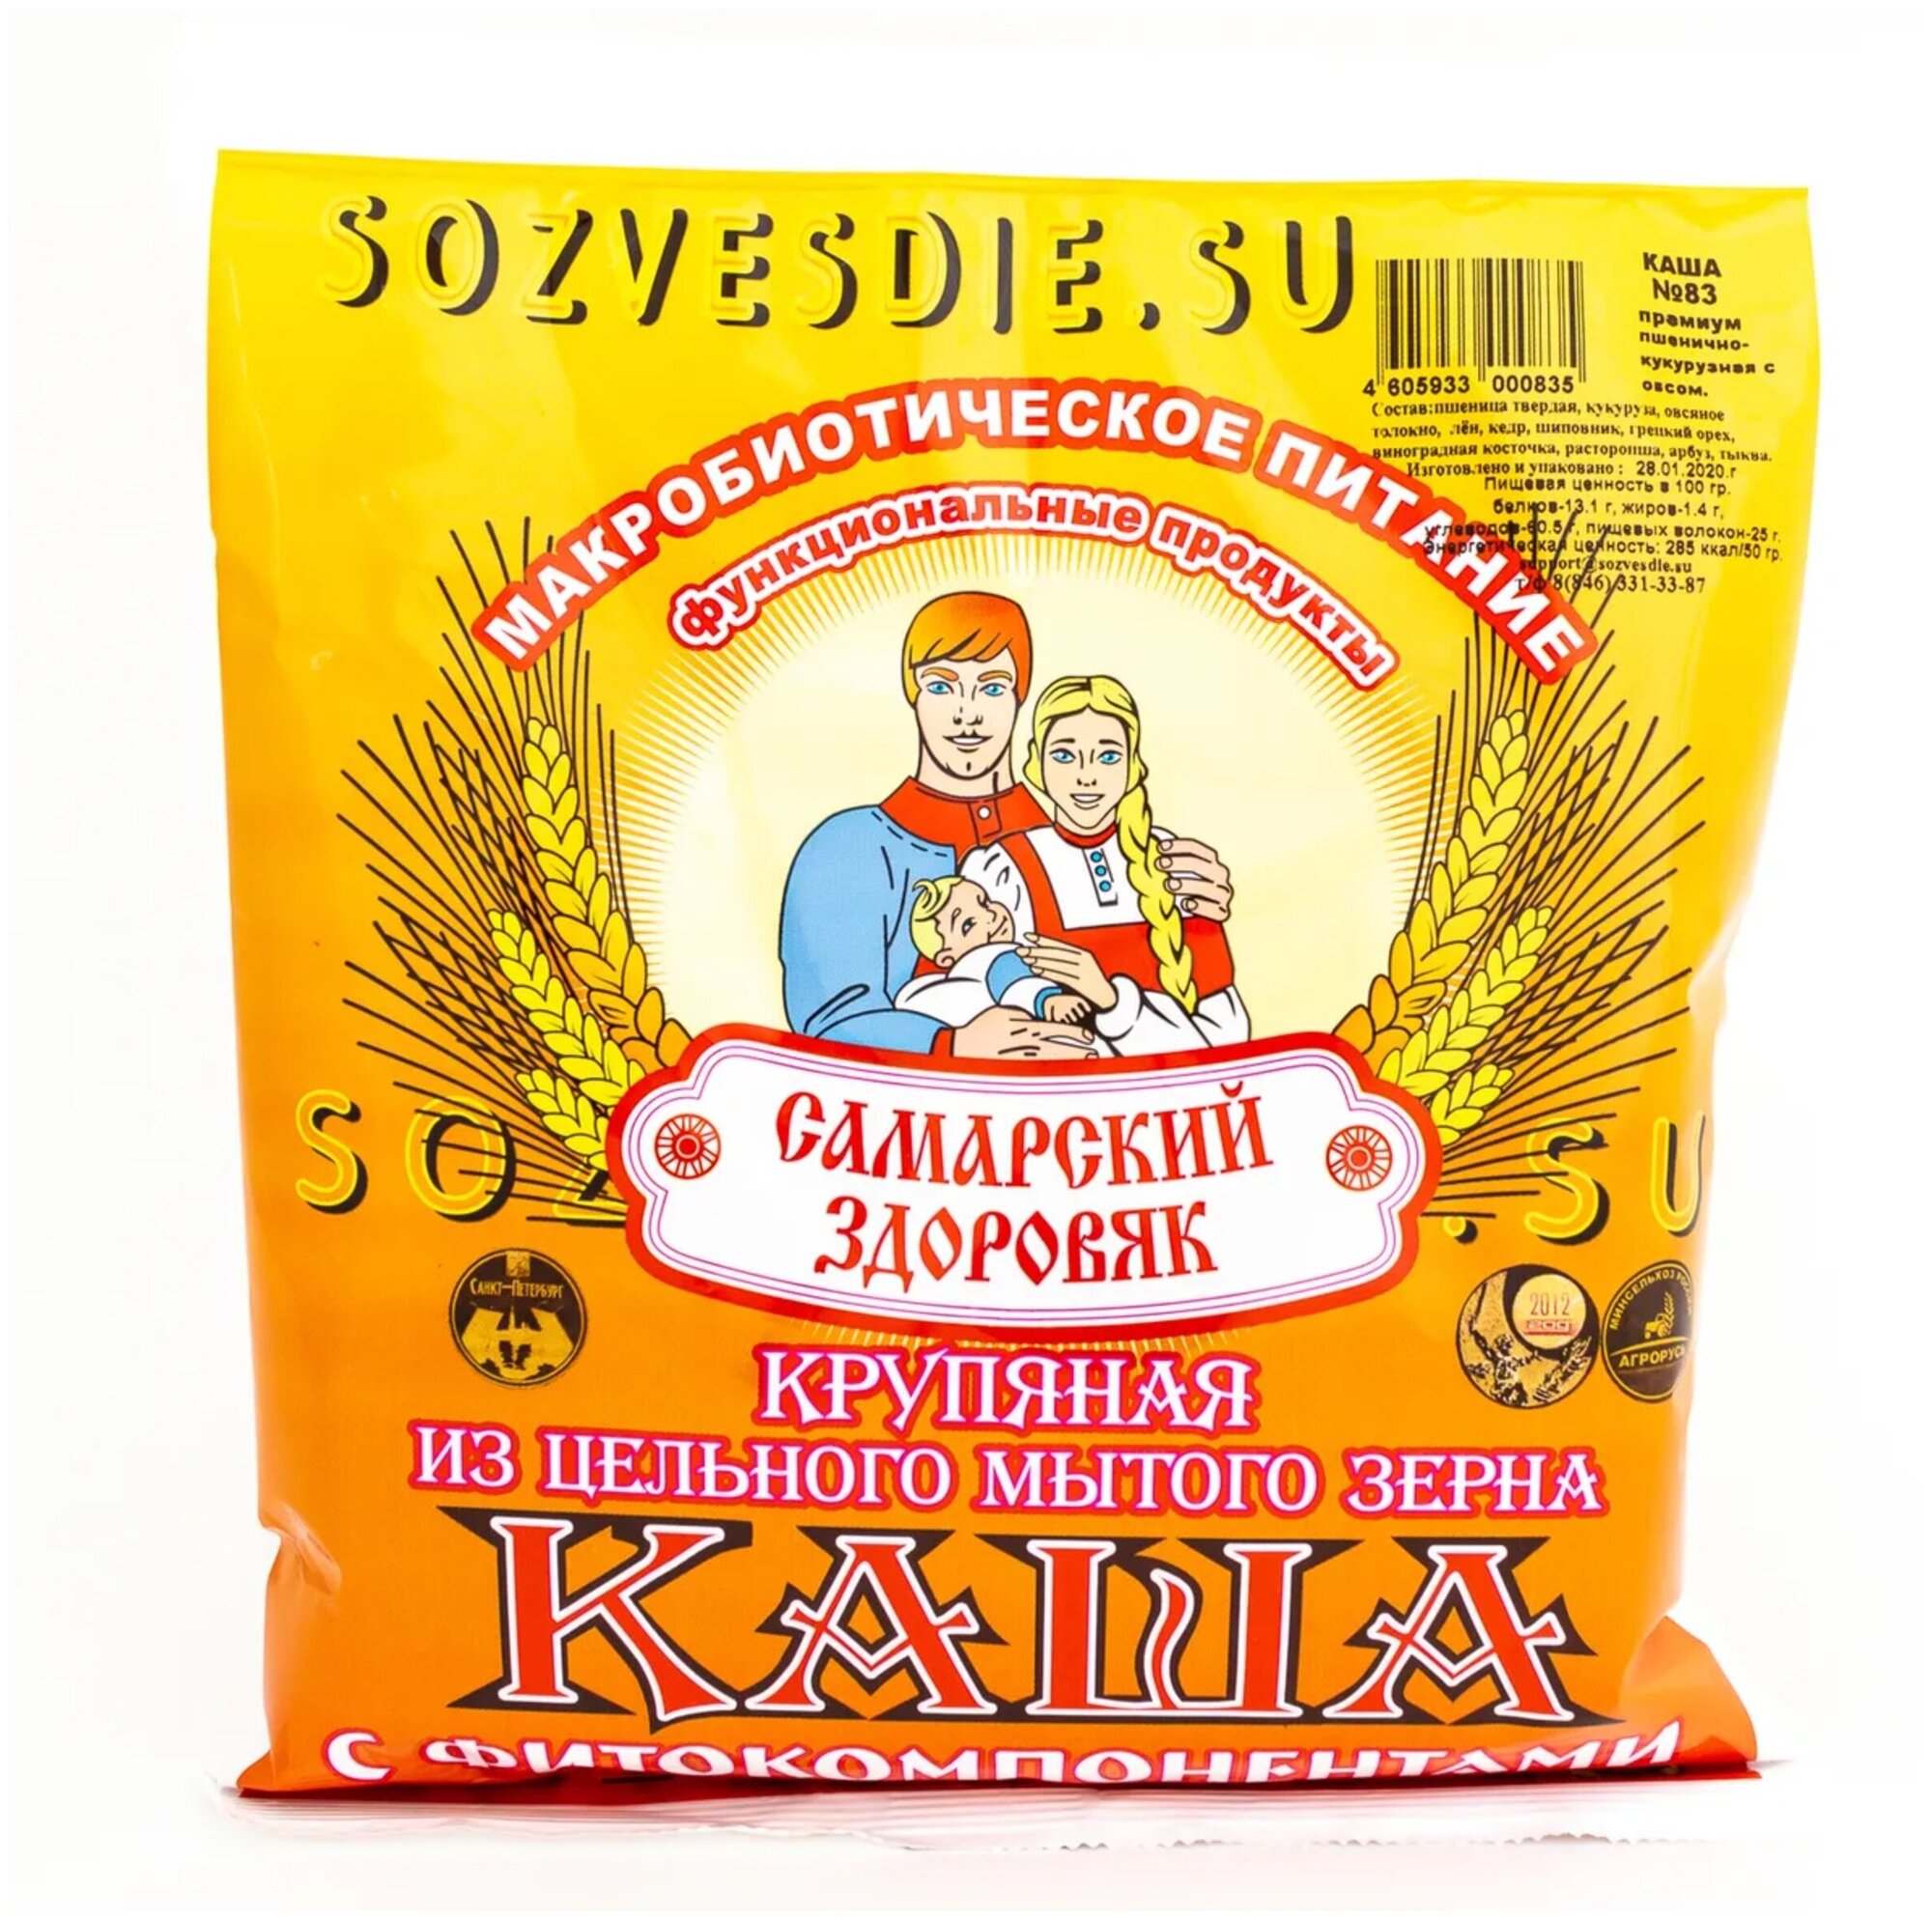 Каша "Самарский Здоровяк” №70 Пшеничная с арахисом и грецким орехом, 250 г.